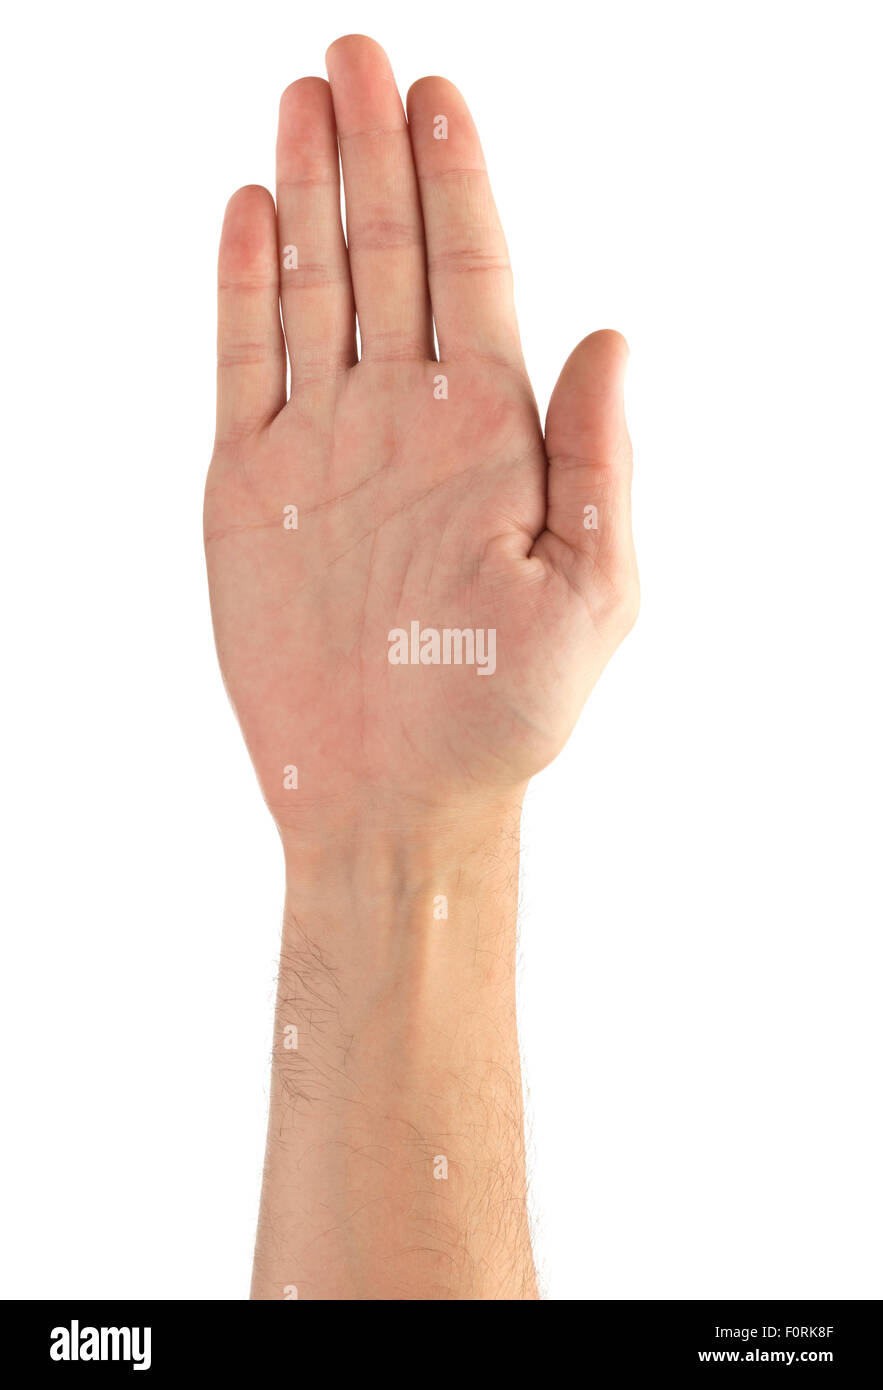 Schuss von Stopp-Signal durch eine Hand gemacht, allgemein anerkannt, isolierten auf weißen Hintergrund Stockfoto